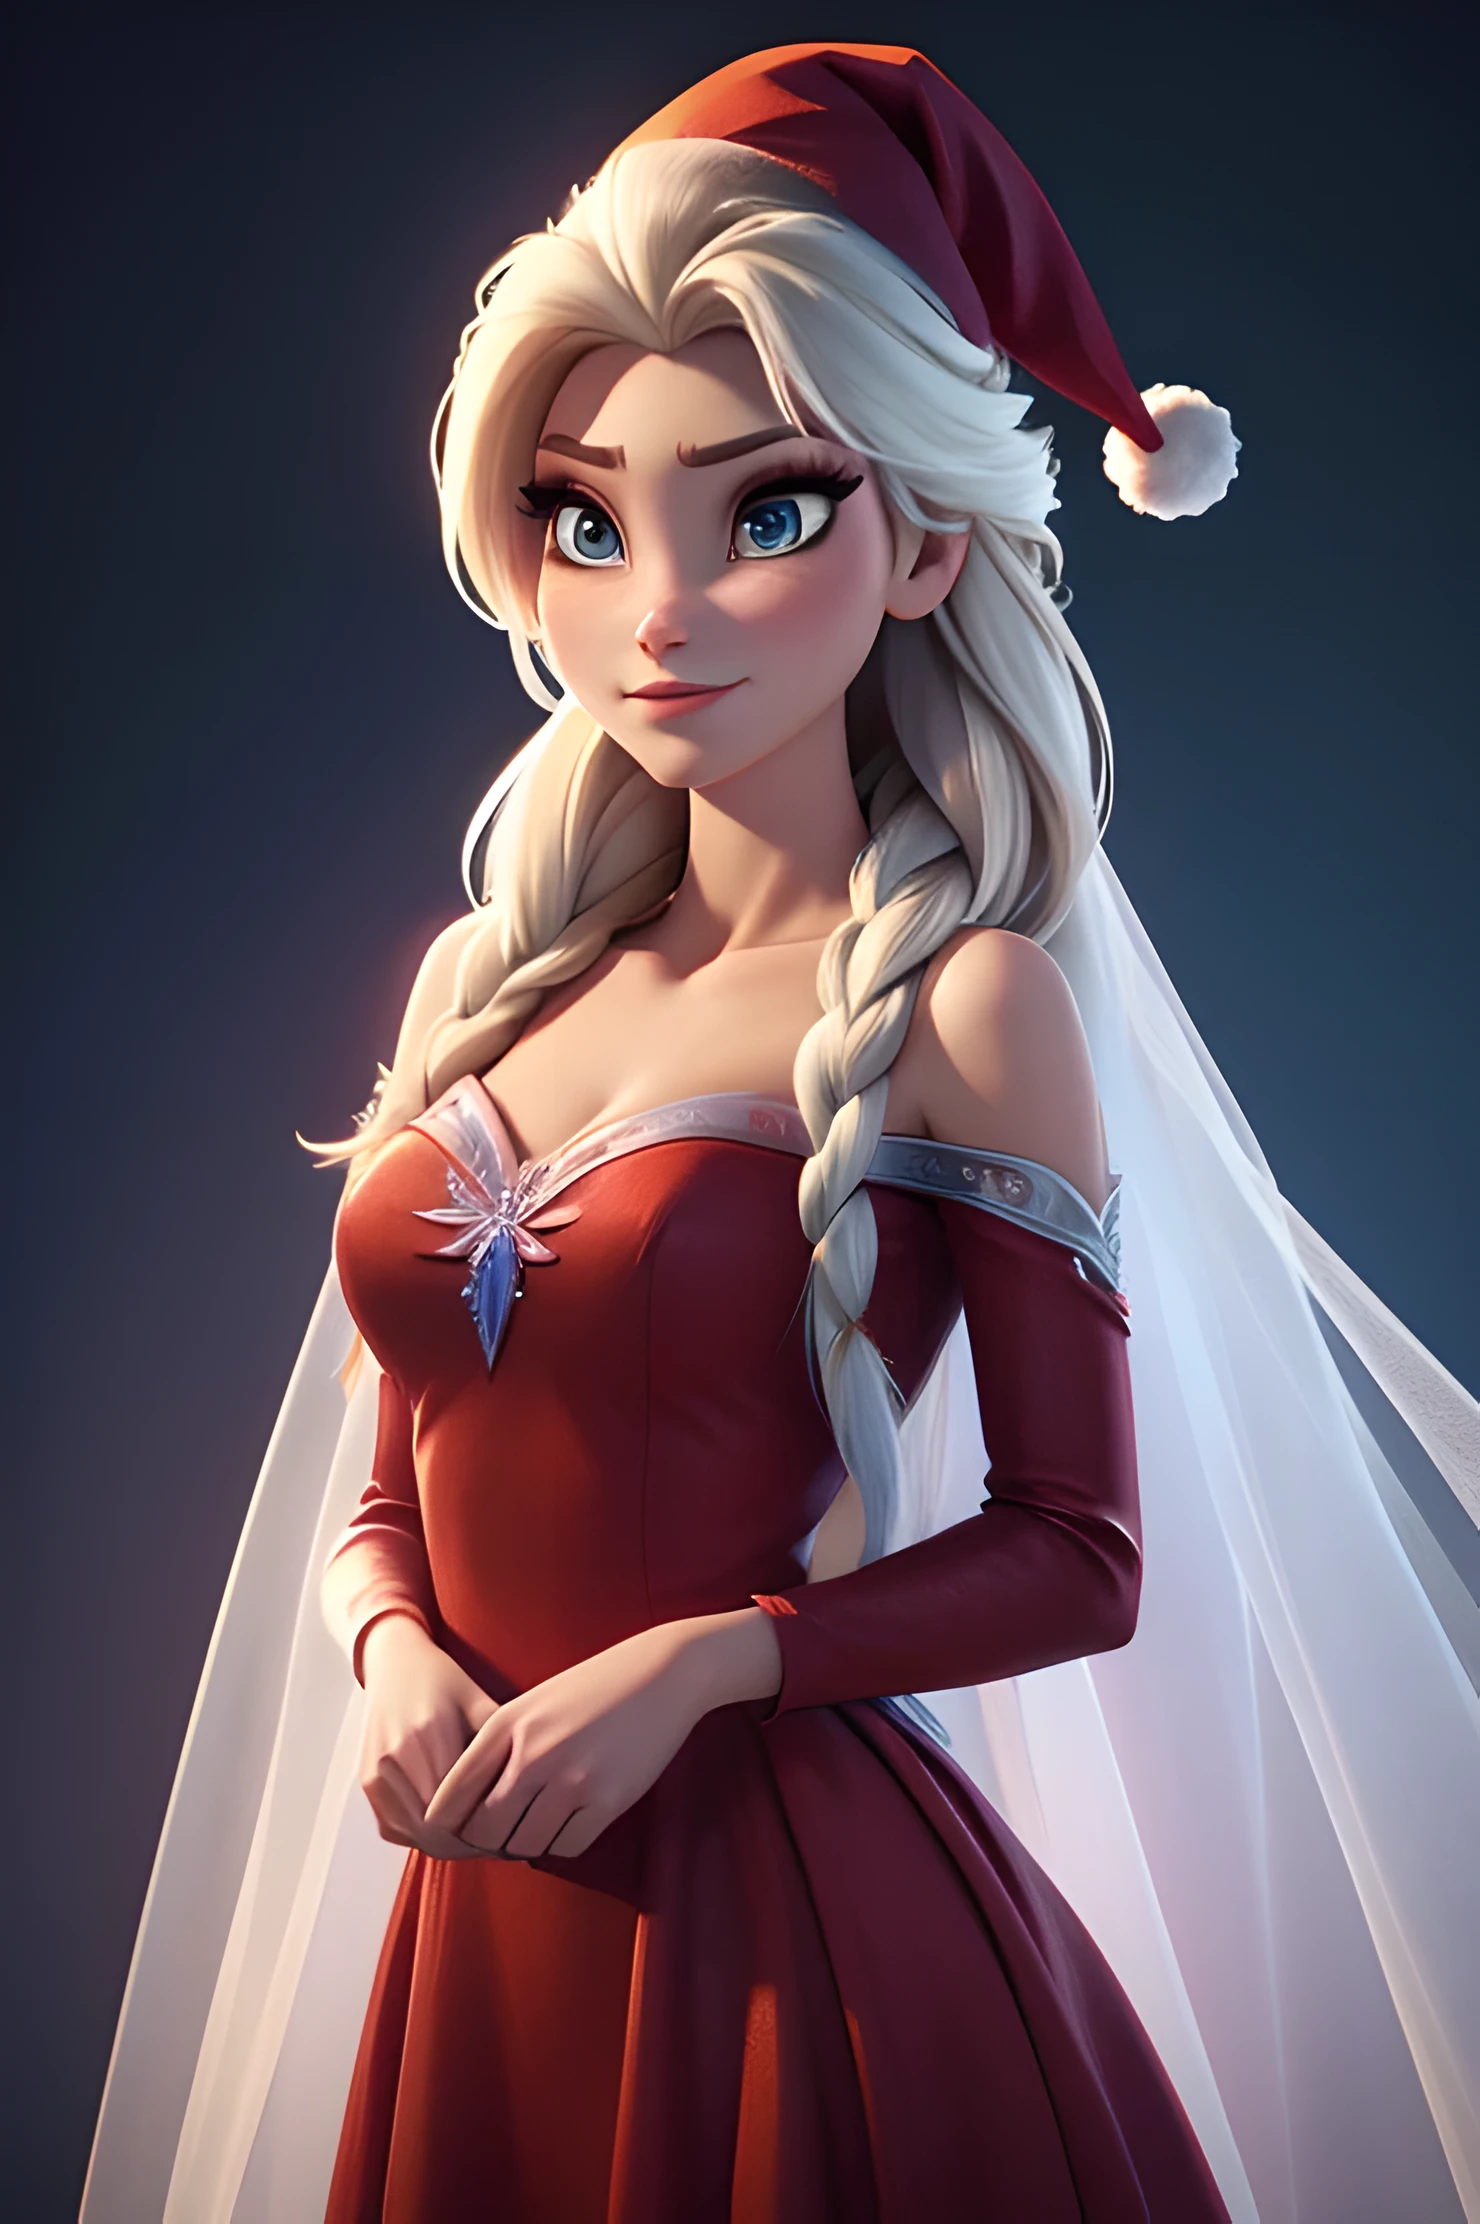 生成《冰雪奇缘》中艾莎的真实形象, 真实人物 冰雪奇缘 艾莎, 穿着现代时尚迎接新年 . HDR 8K纹理连衣裙, 视觉渲染 Elsa, 艾莎应该穿一件红色的, 精致长裙 , 还有一顶新年圣诞帽. 这件衣服应该时尚，适合公主. 带有真羽毛和流苏的新年礼服